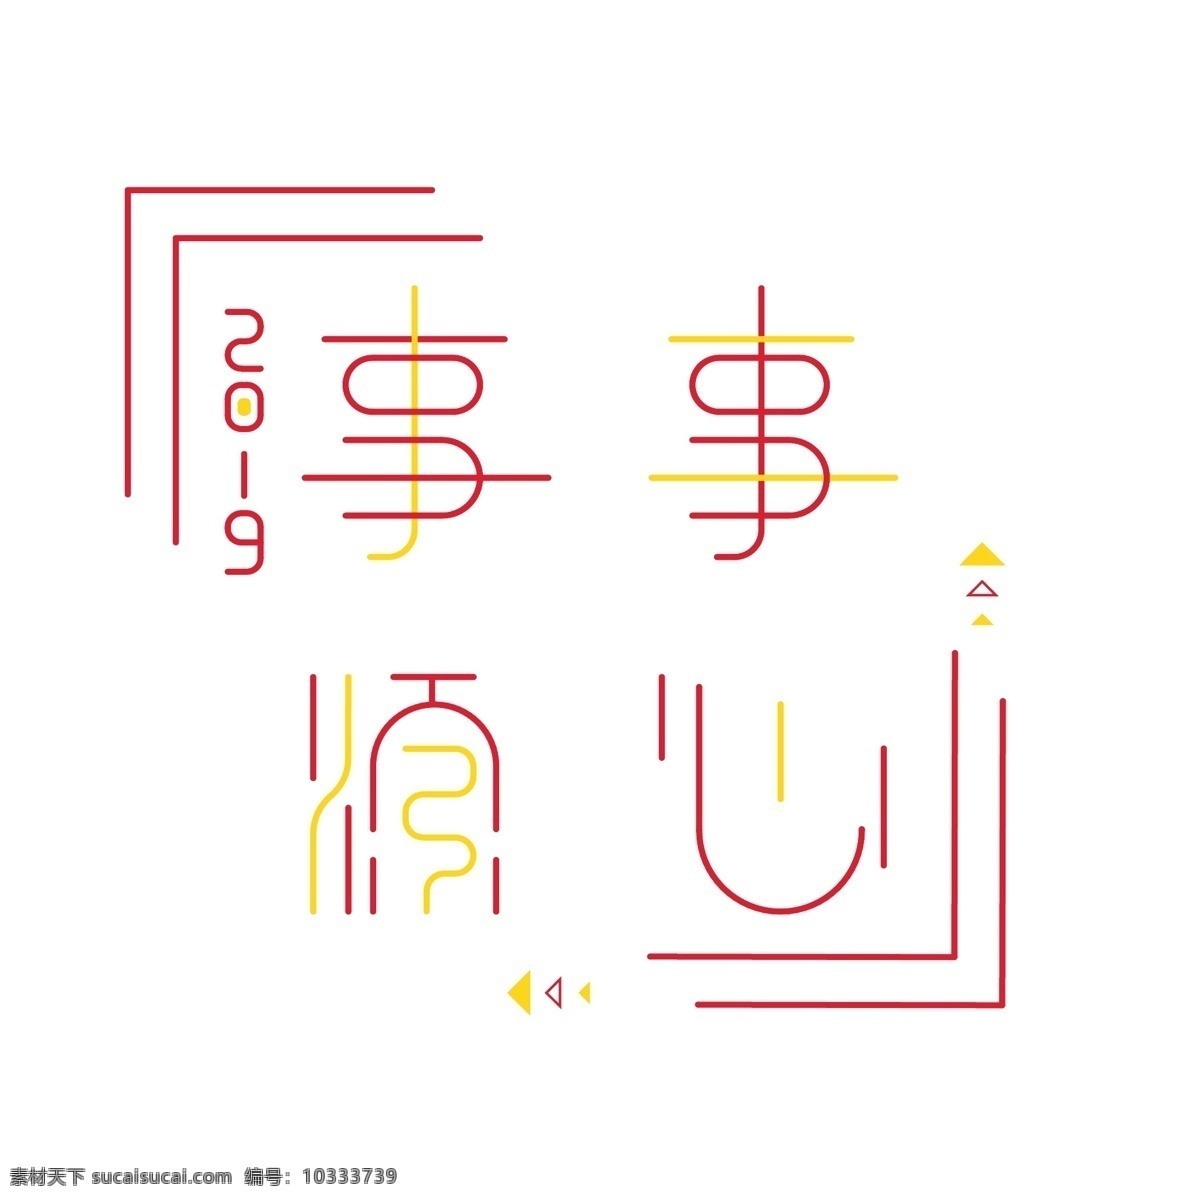 艺术 字体 红 黄 对比 事事 顺心 商用 元素 艺术字体设计 字体设计 可商用 事事顺心 2019 红黄对比